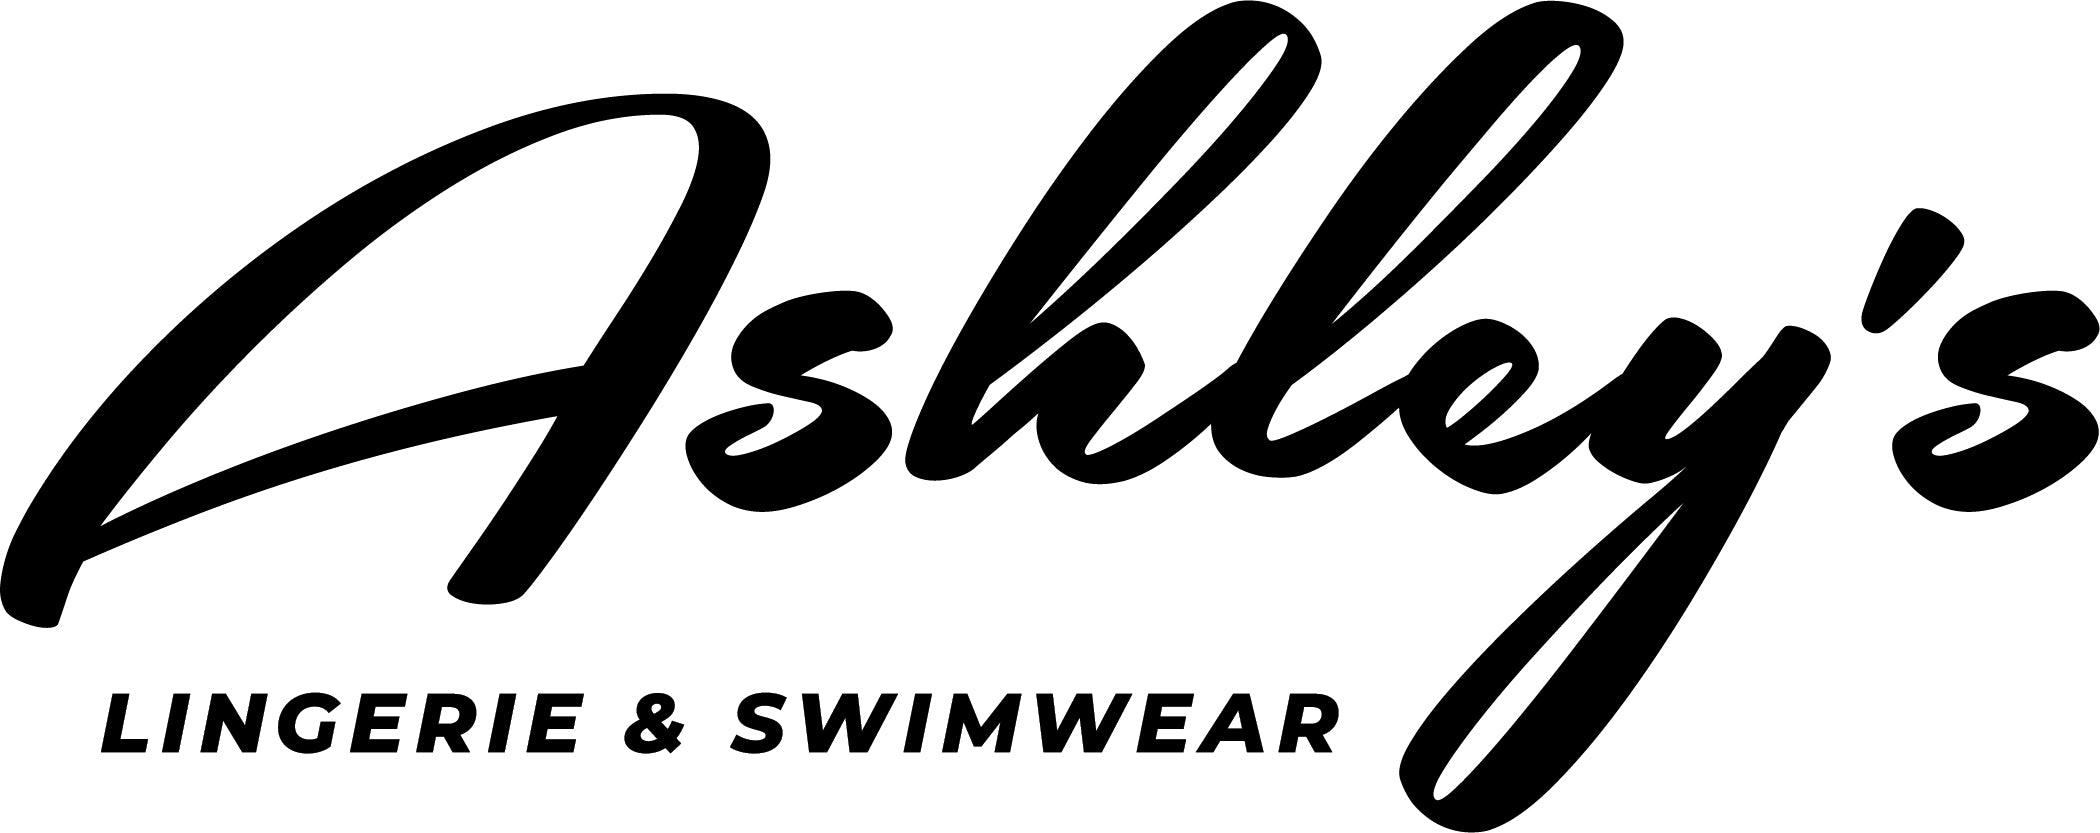 Bonded Hipster - PP505 - Euro Nude – Ashley's Lingerie & Swimwear